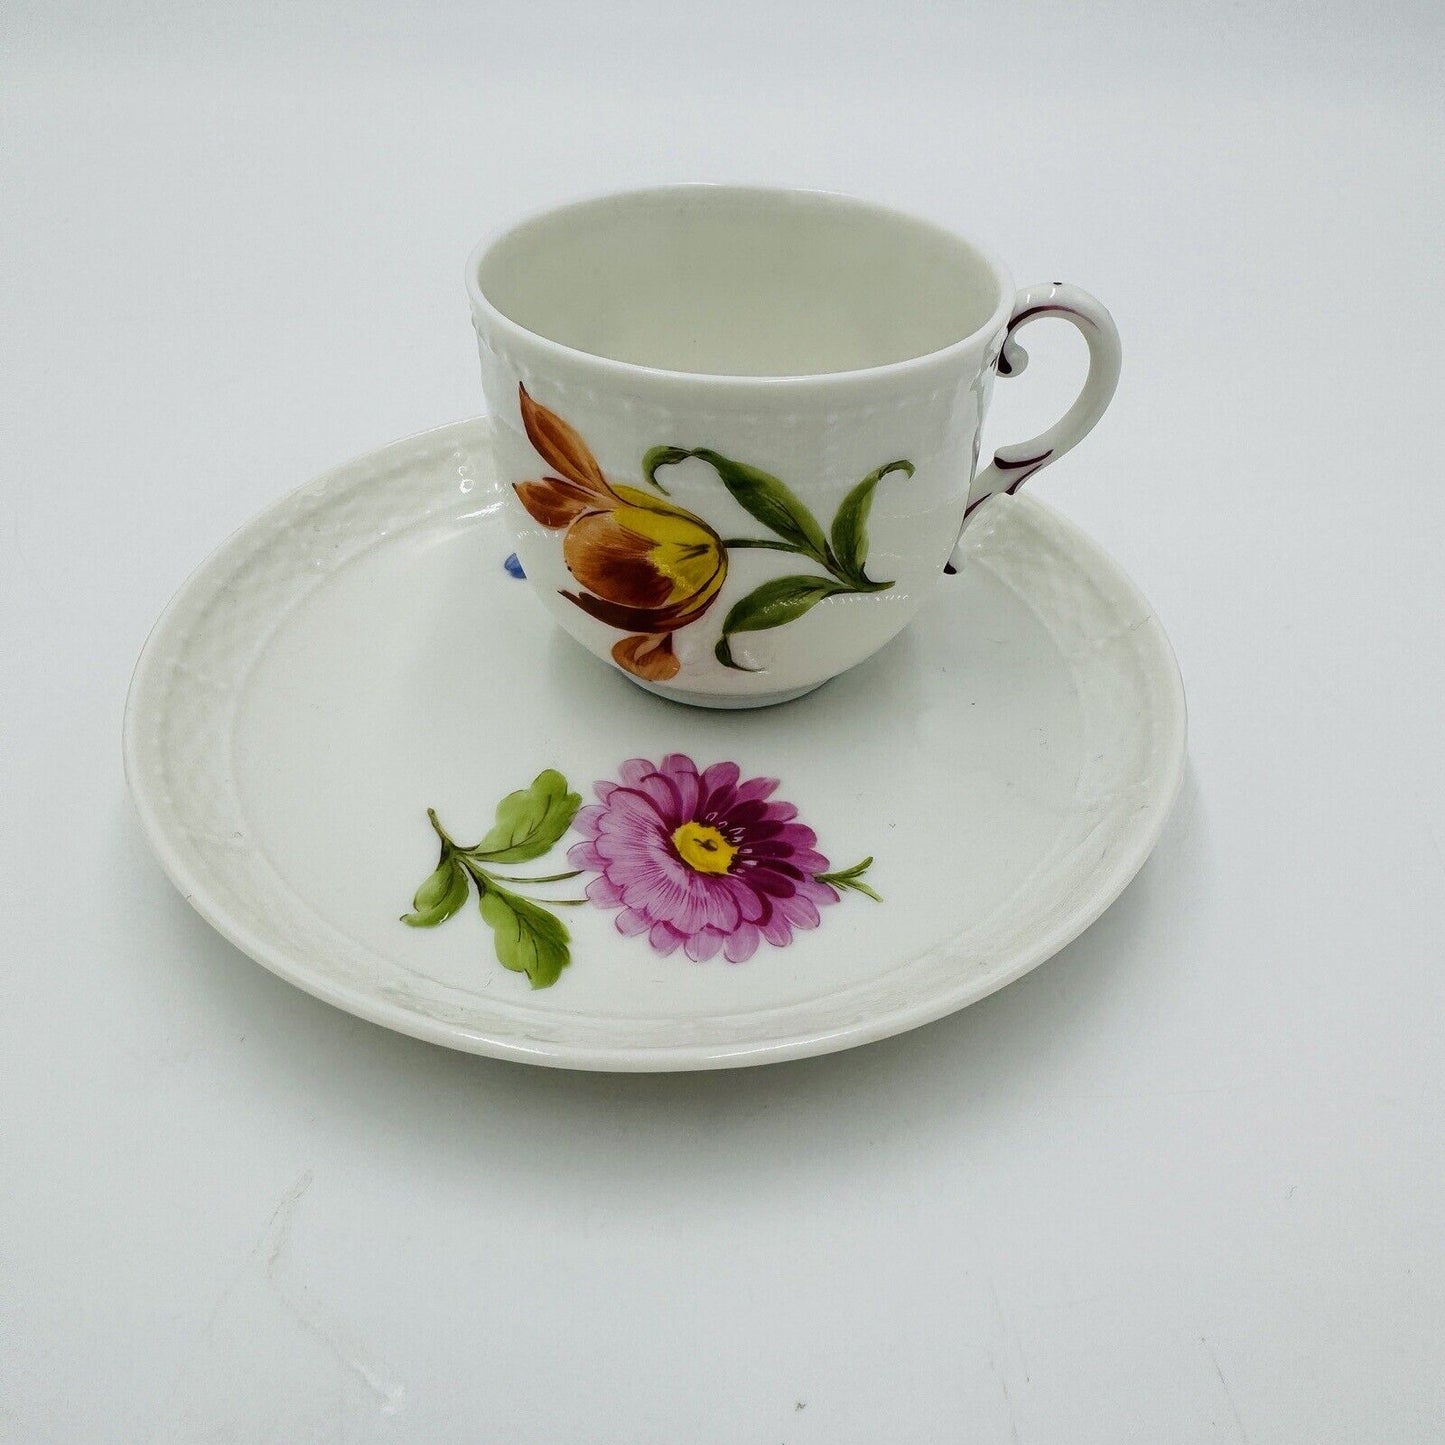 Antique Nymphenburg Porcelain L 20517 tea cup & saucer hand painted floral